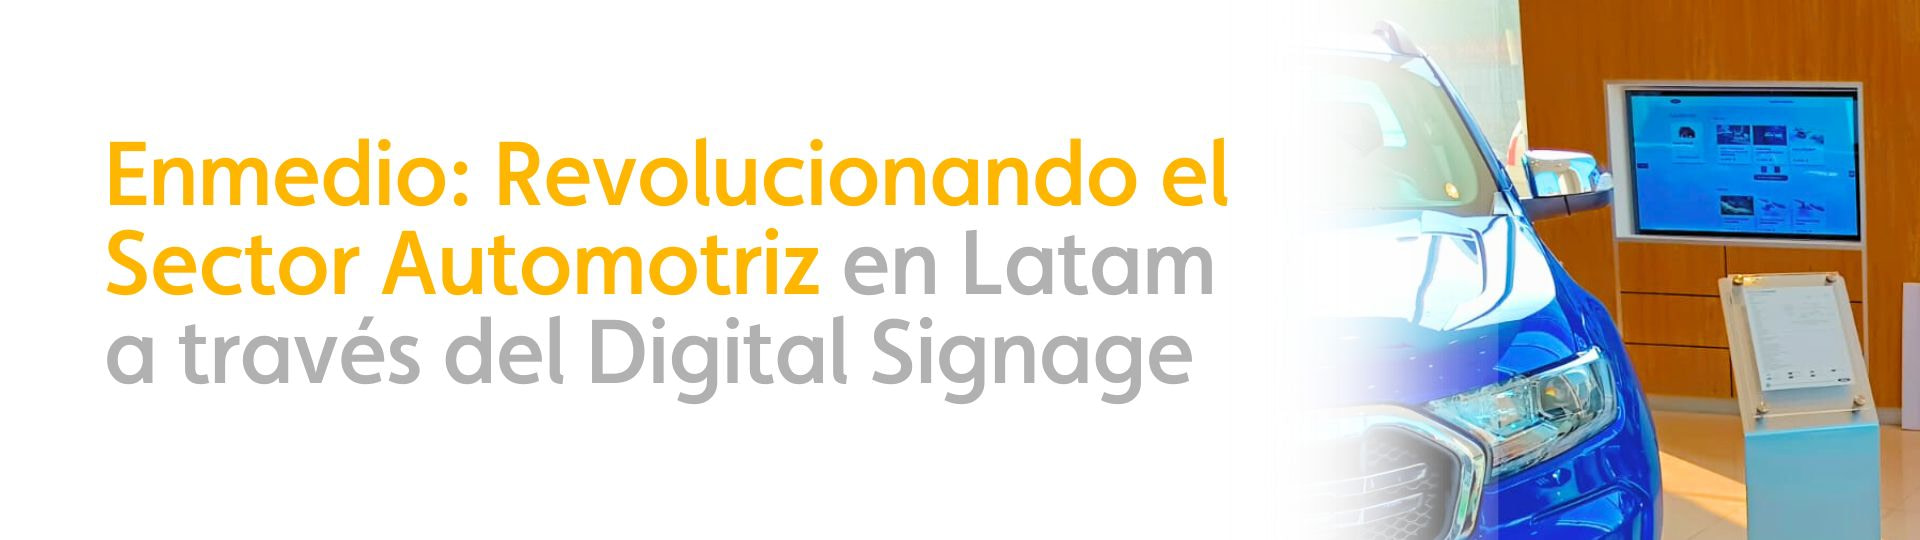 Enmedio: Revolucionando el Sector Automotriz en Latam a través del Digital Signage 2